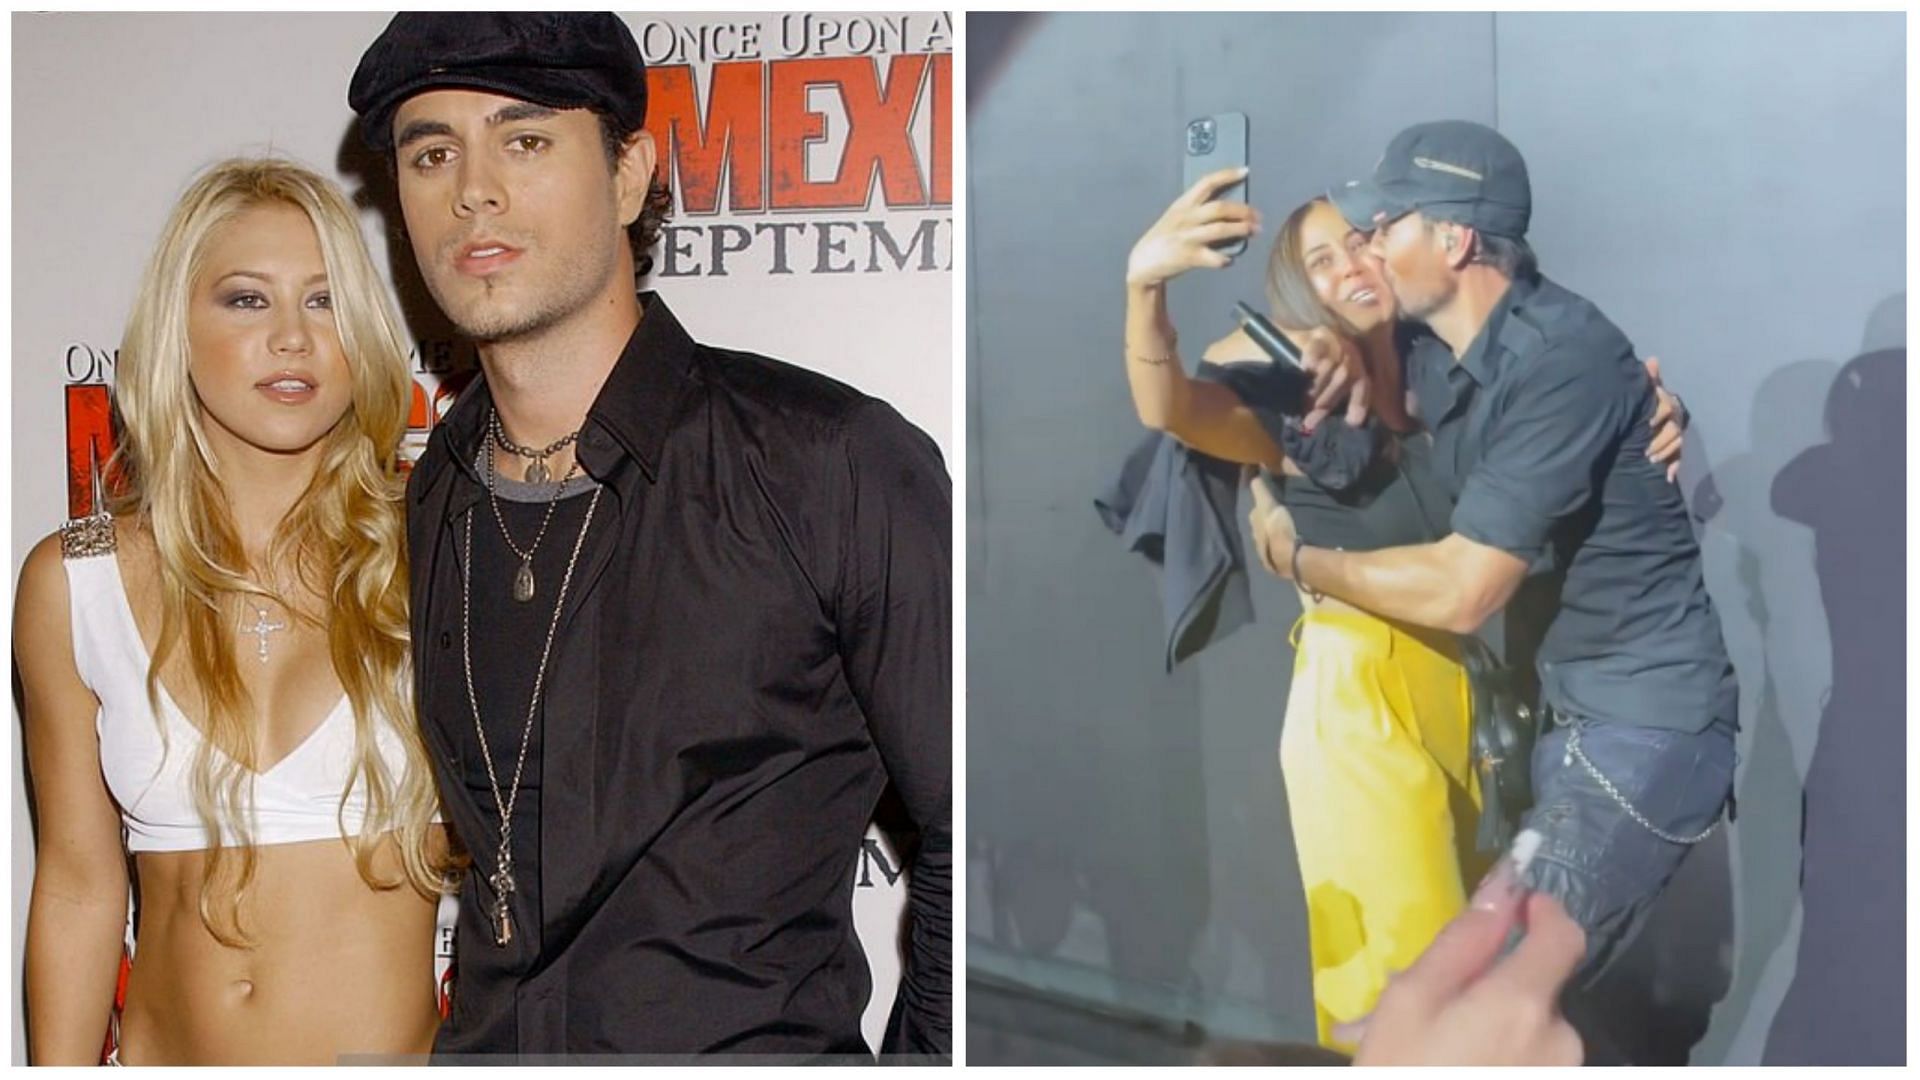 Enrique Iglesias often kisses his fans during concerts (Image via @enrique/Instagram and Bill Davila/Getty images)